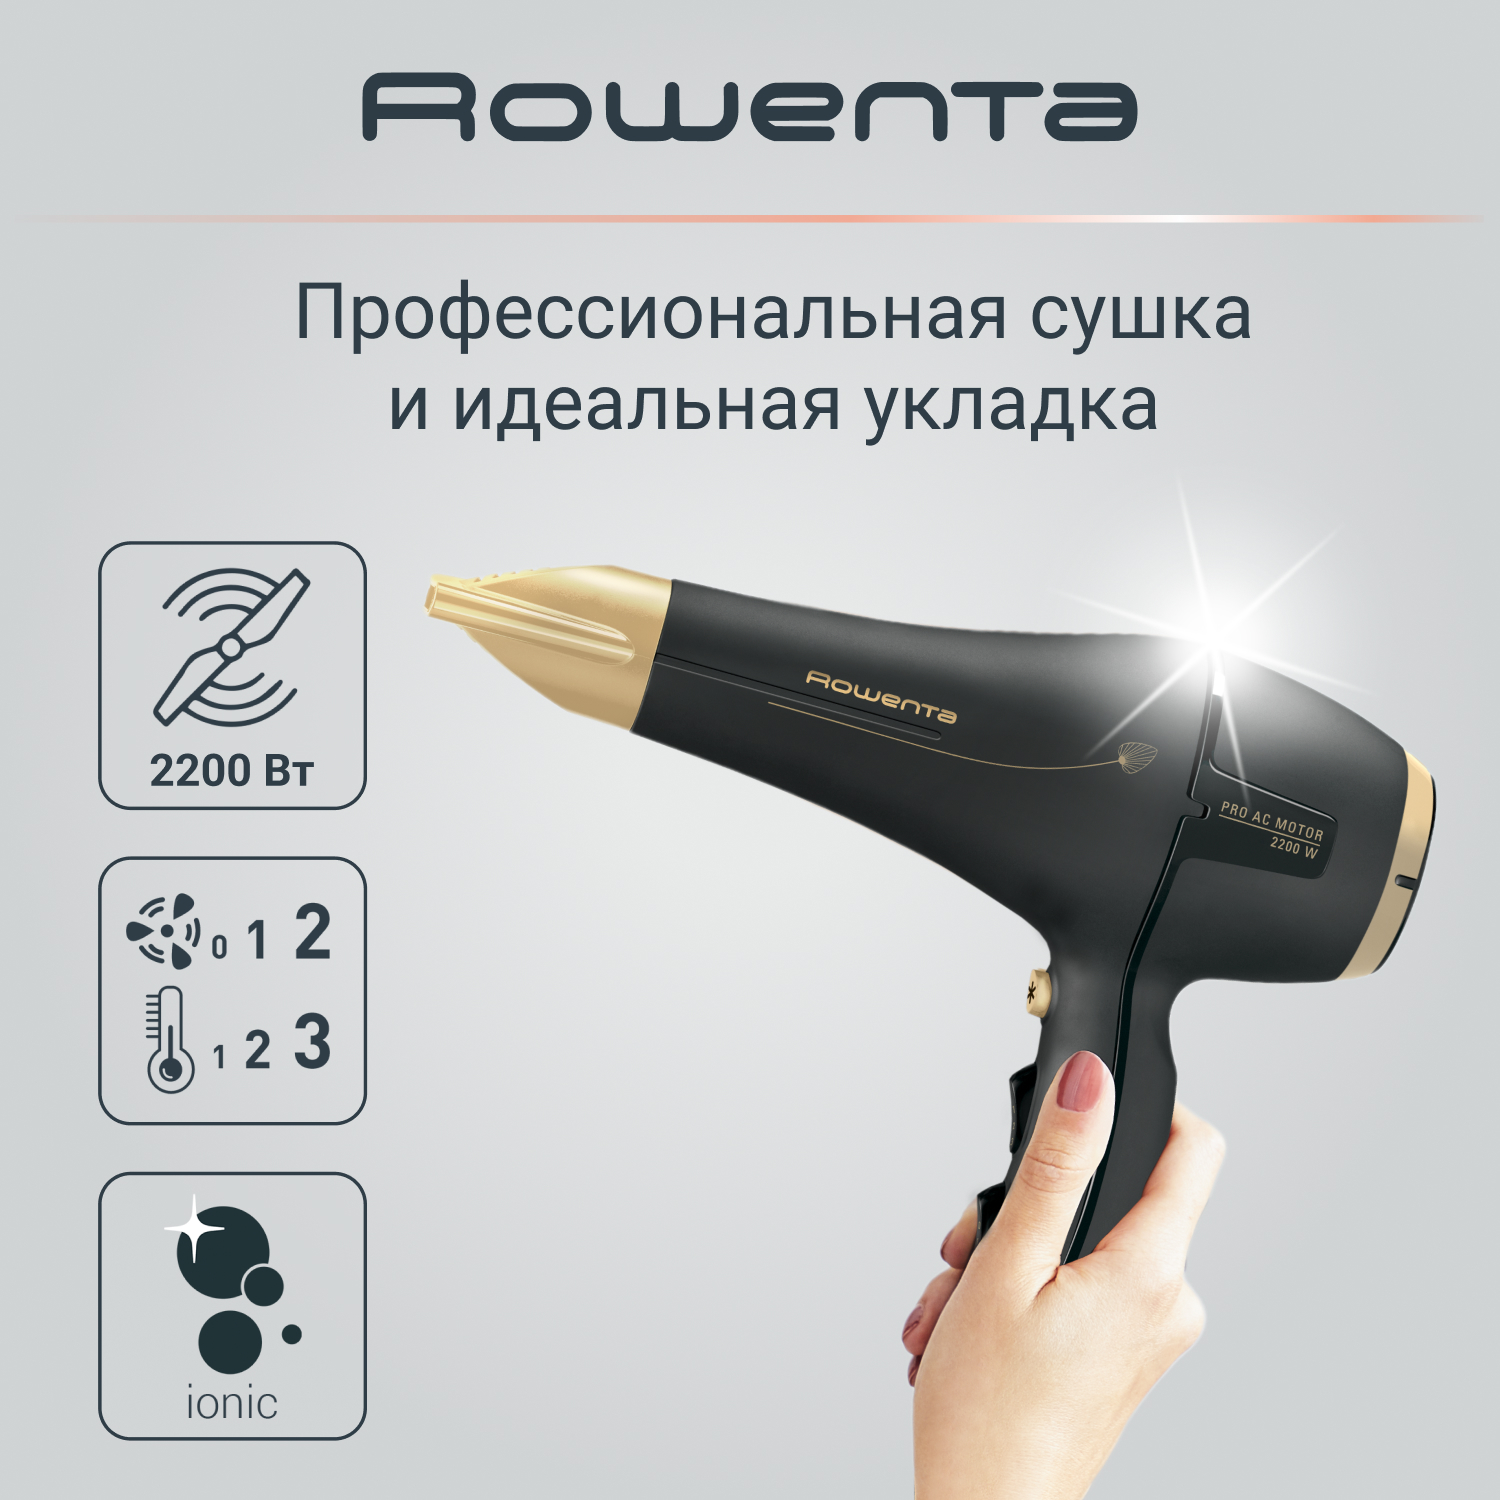 Фен Rowenta Signature Pro AC Magic Nature CV7846F0, 2200 Вт, черный/золотой фен rowenta signature pro ac cv7810f0